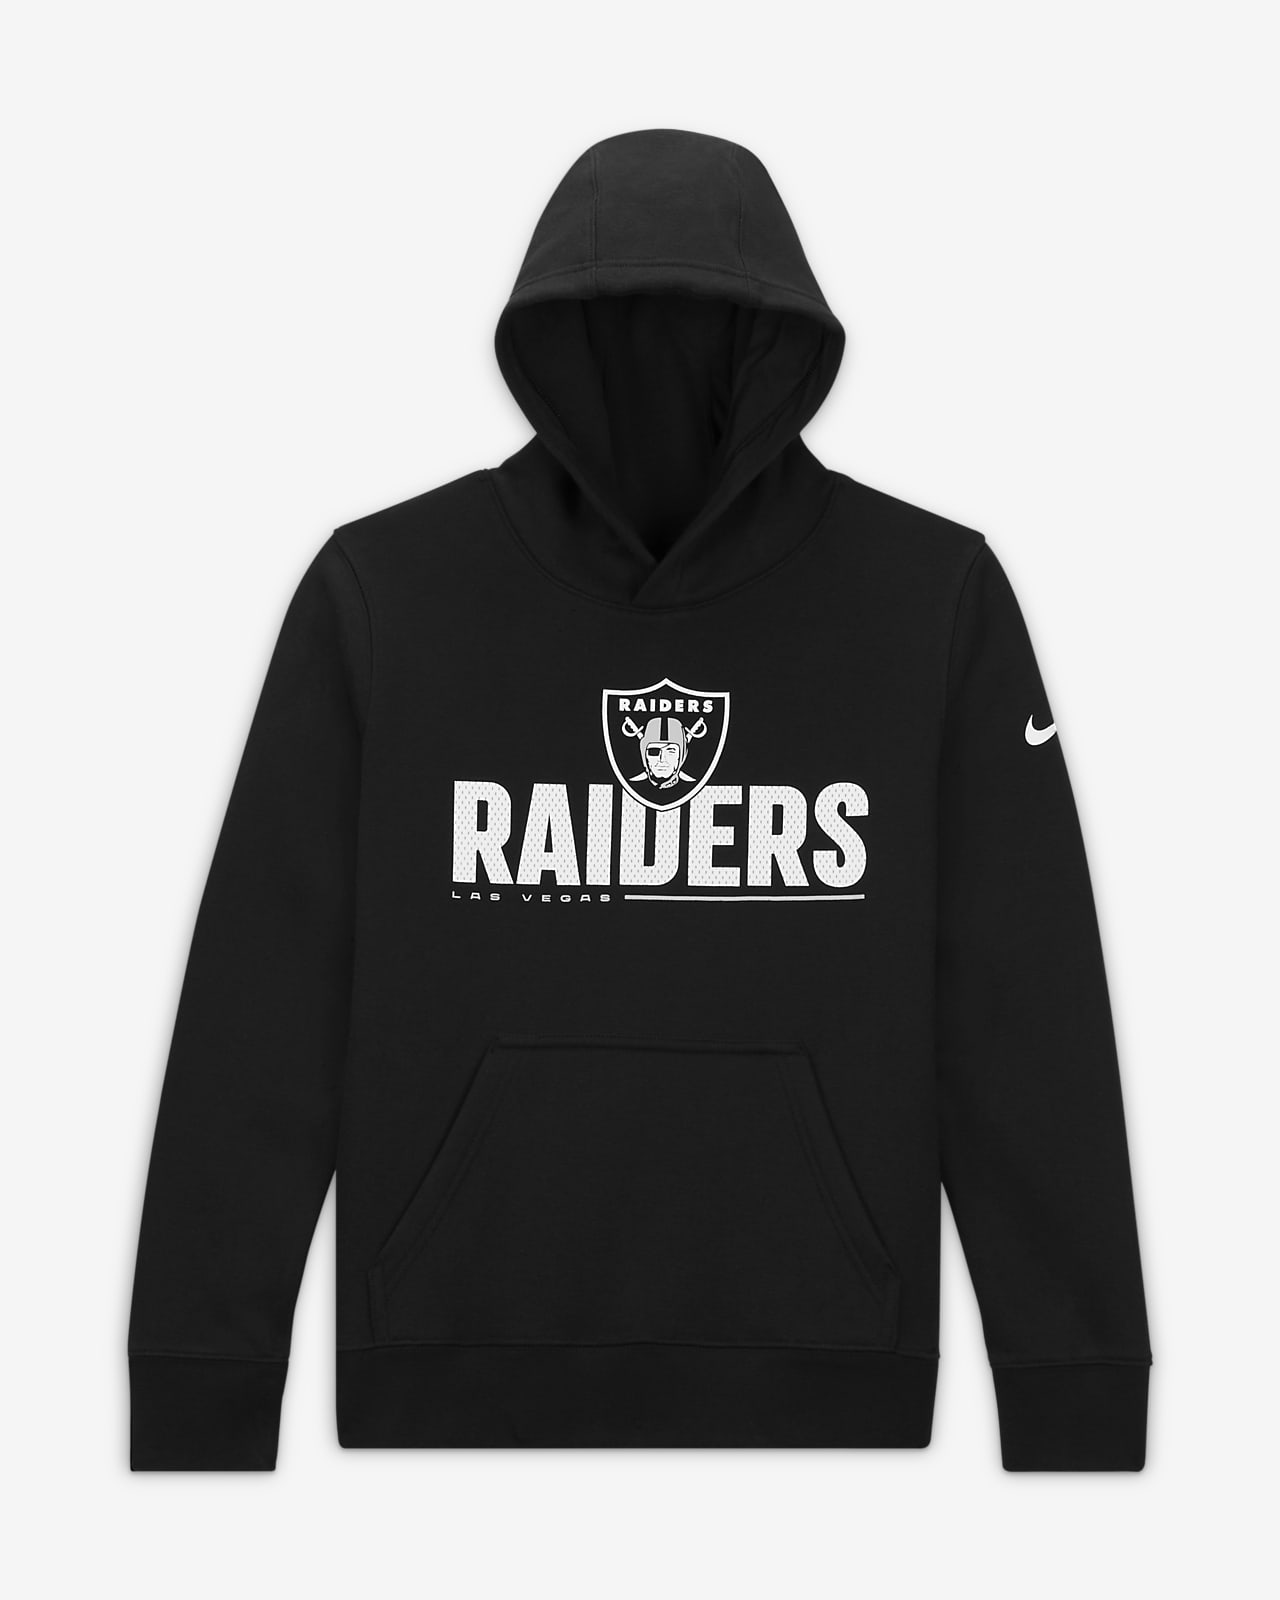 Nike (NFL Las Vegas Raiders) Older Kids' Pullover Hoodie